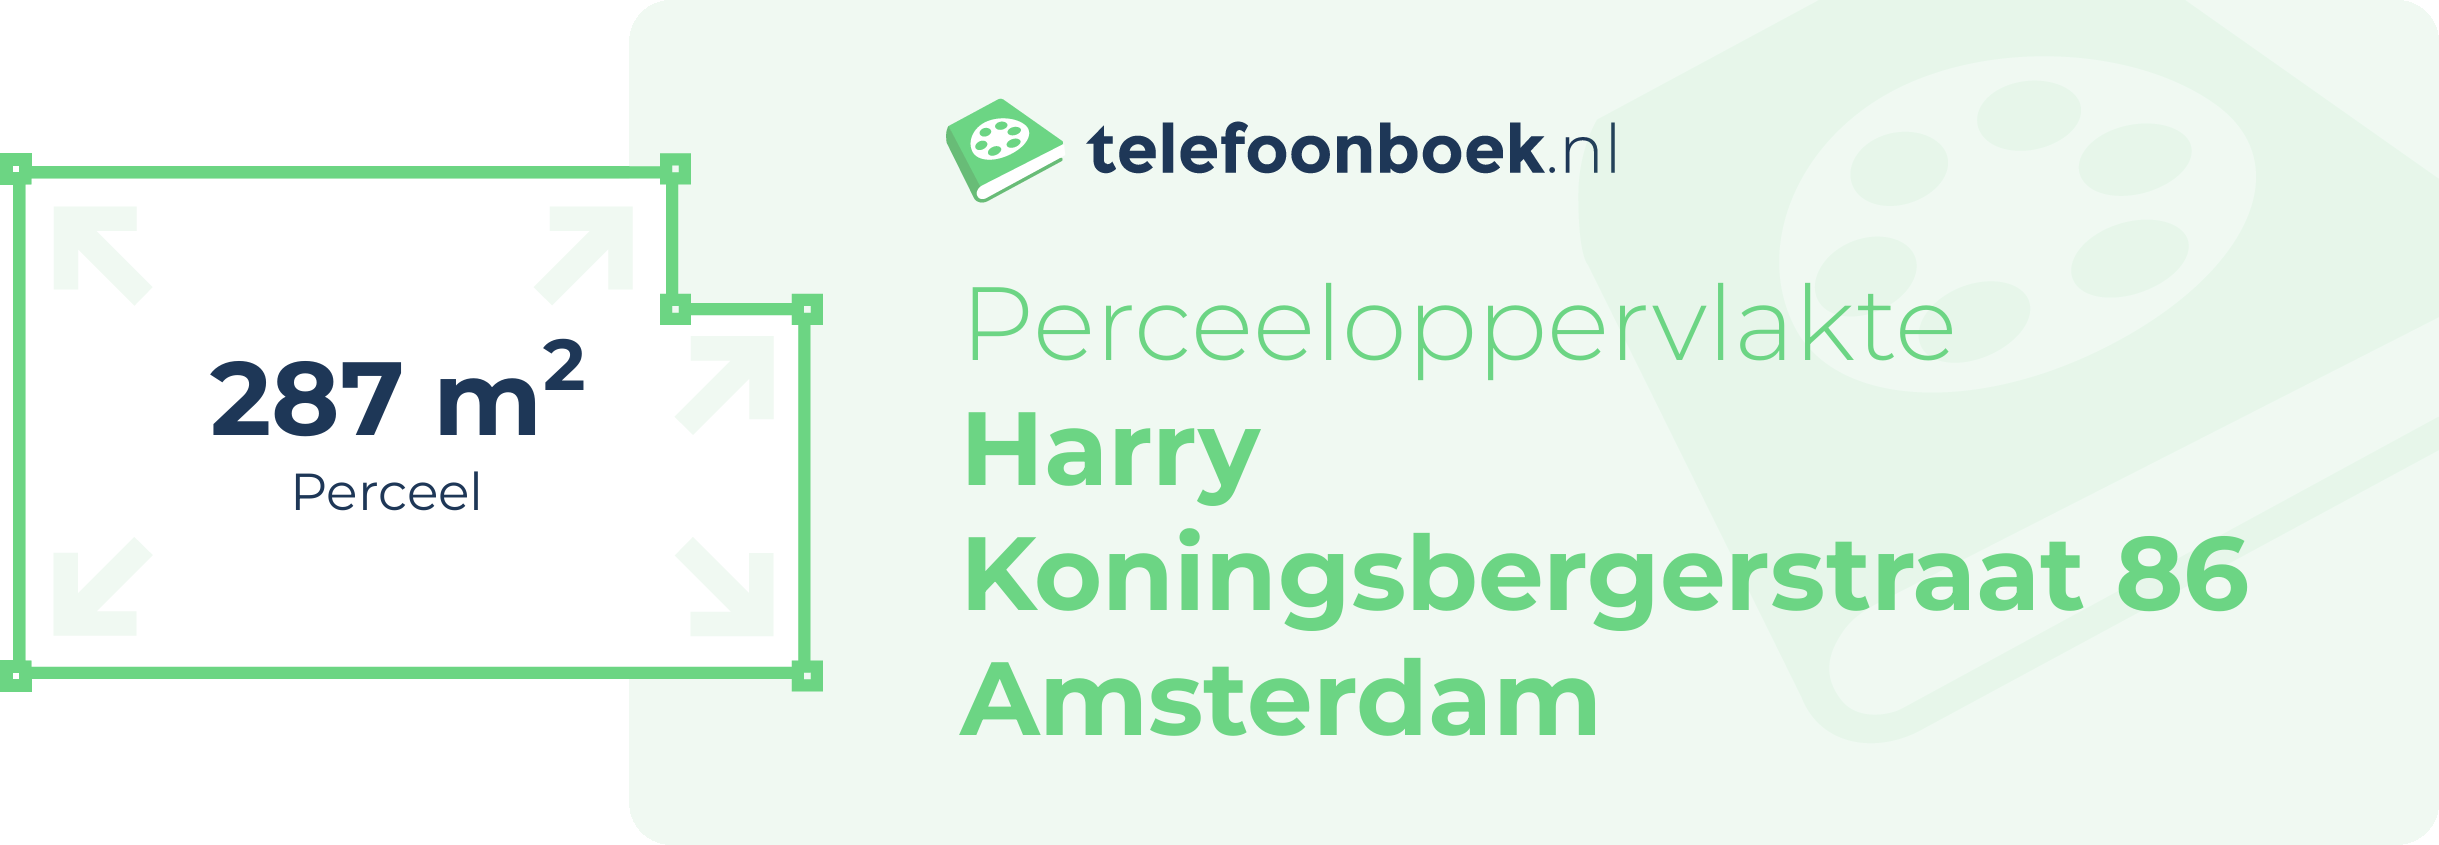 Perceeloppervlakte Harry Koningsbergerstraat 86 Amsterdam